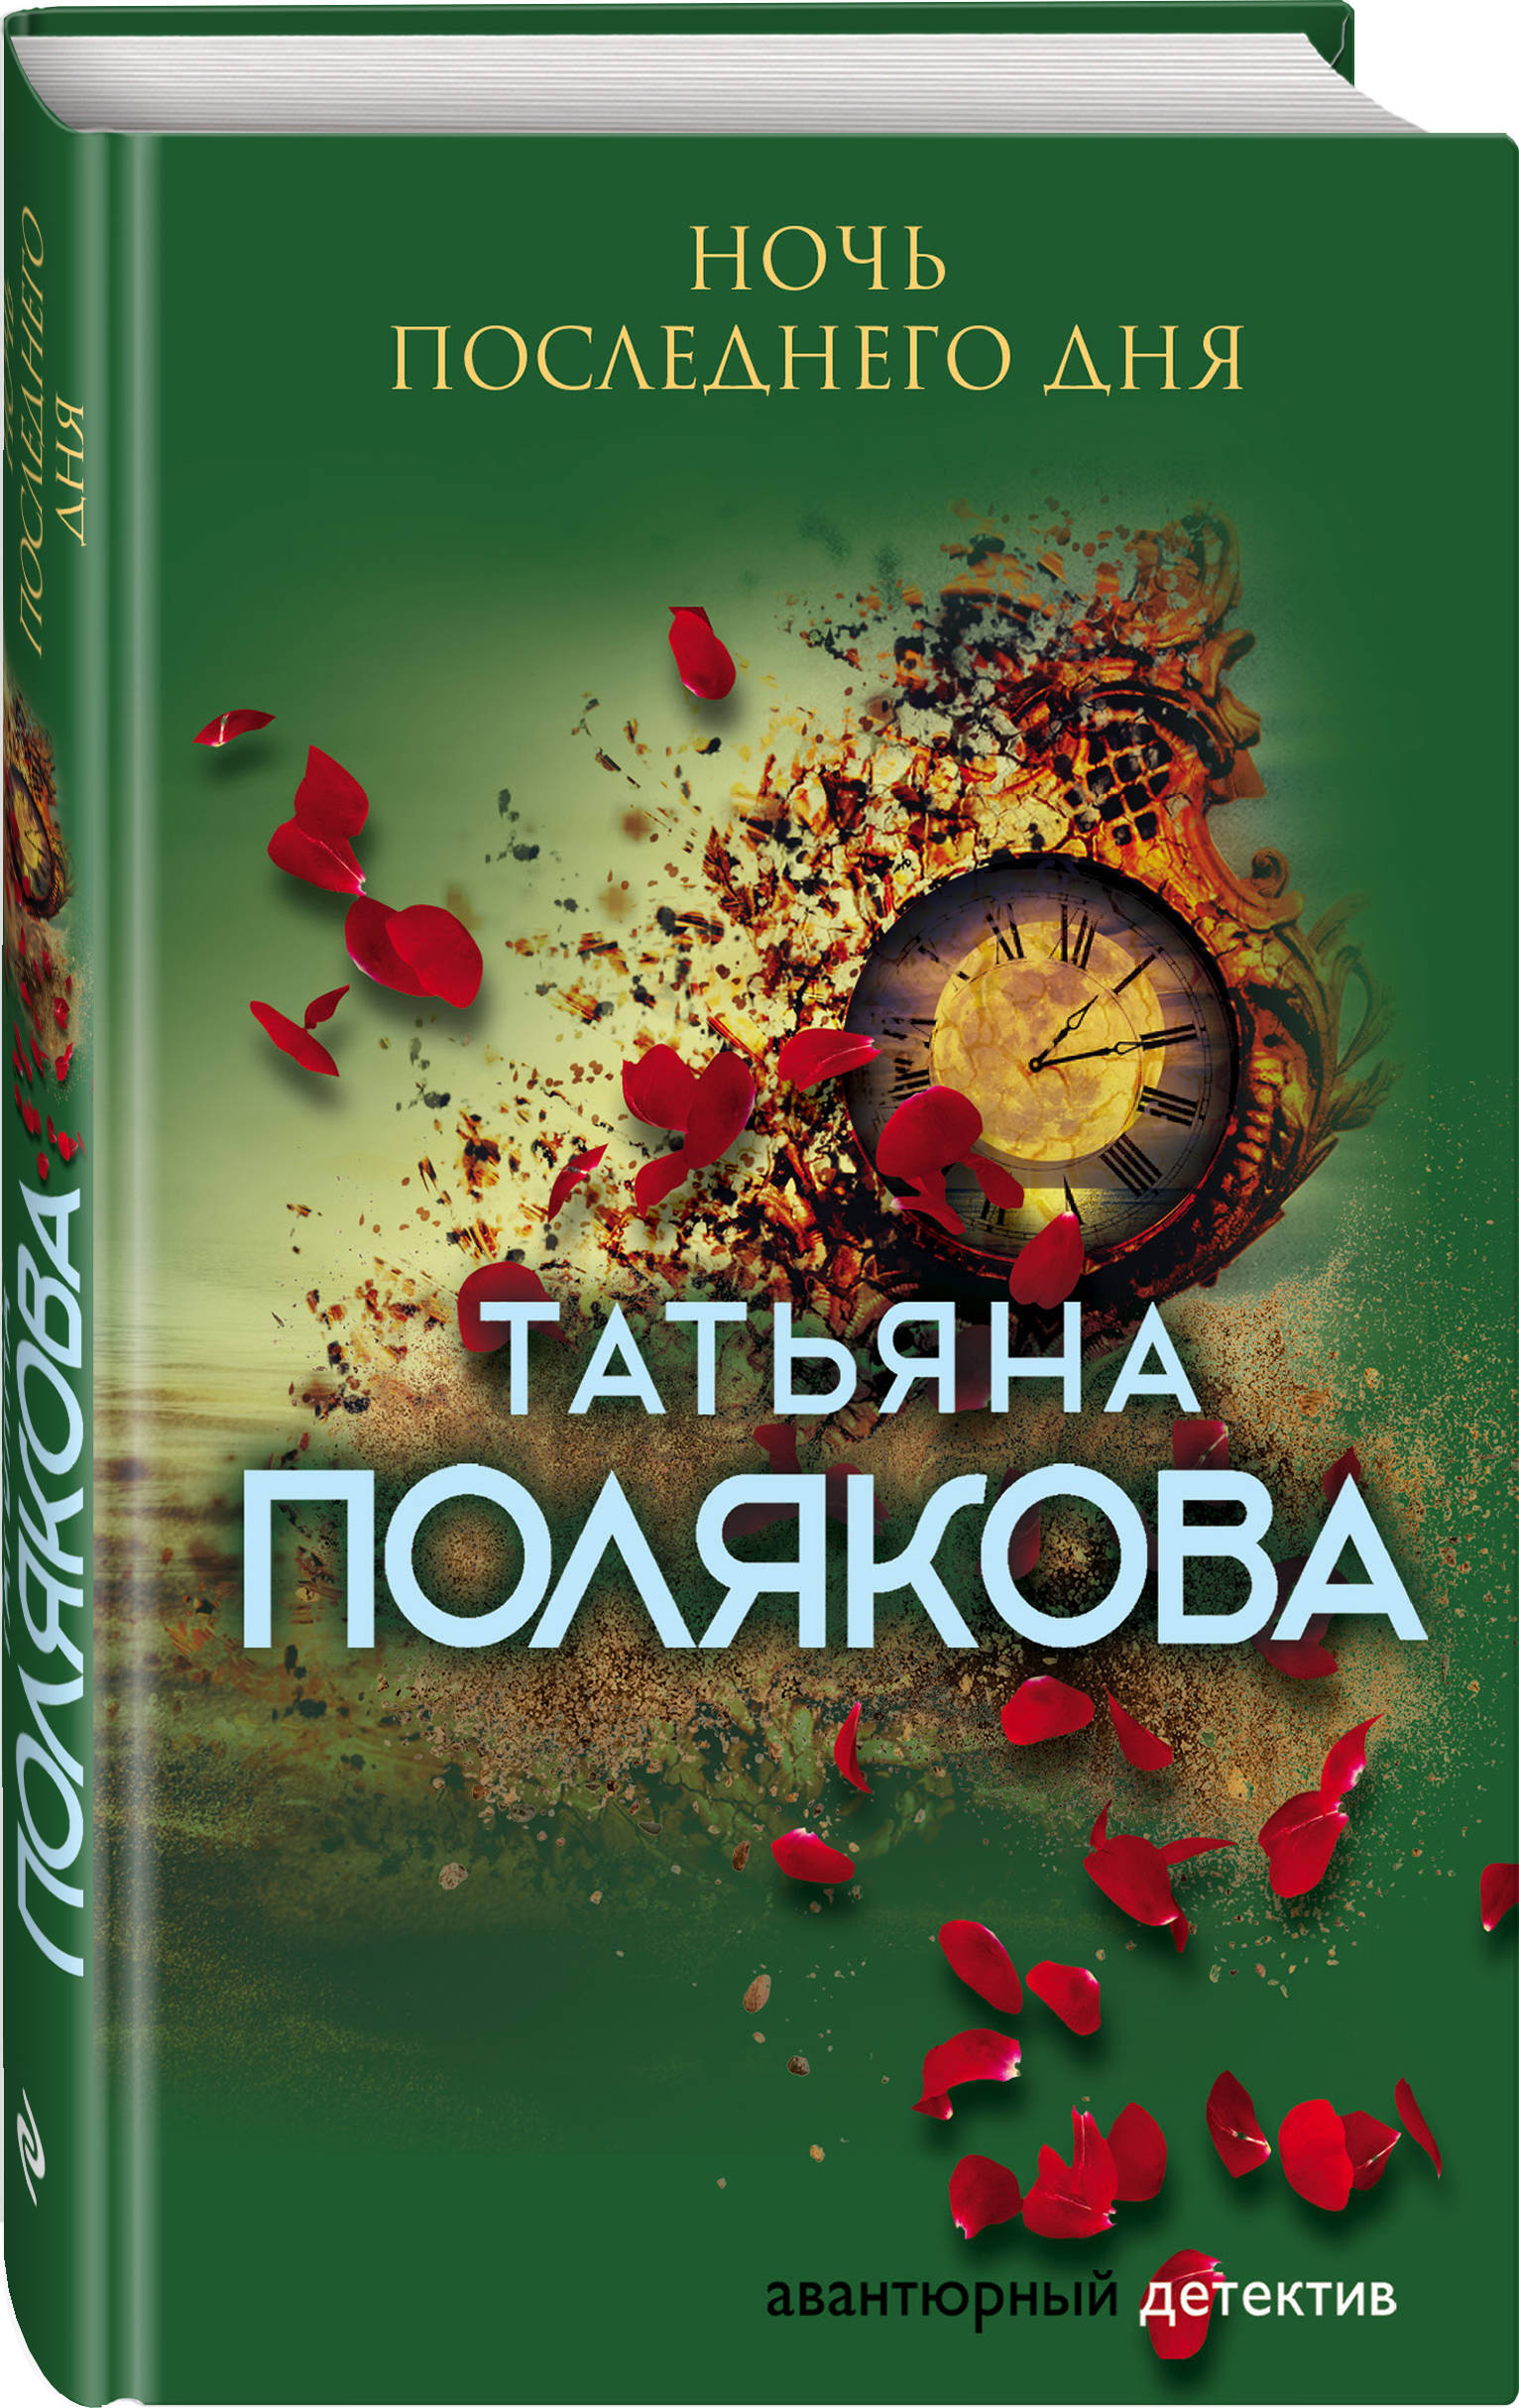 Купить книгу поляковой. Полякова книги. Последняя книга Татьяны Поляковой.